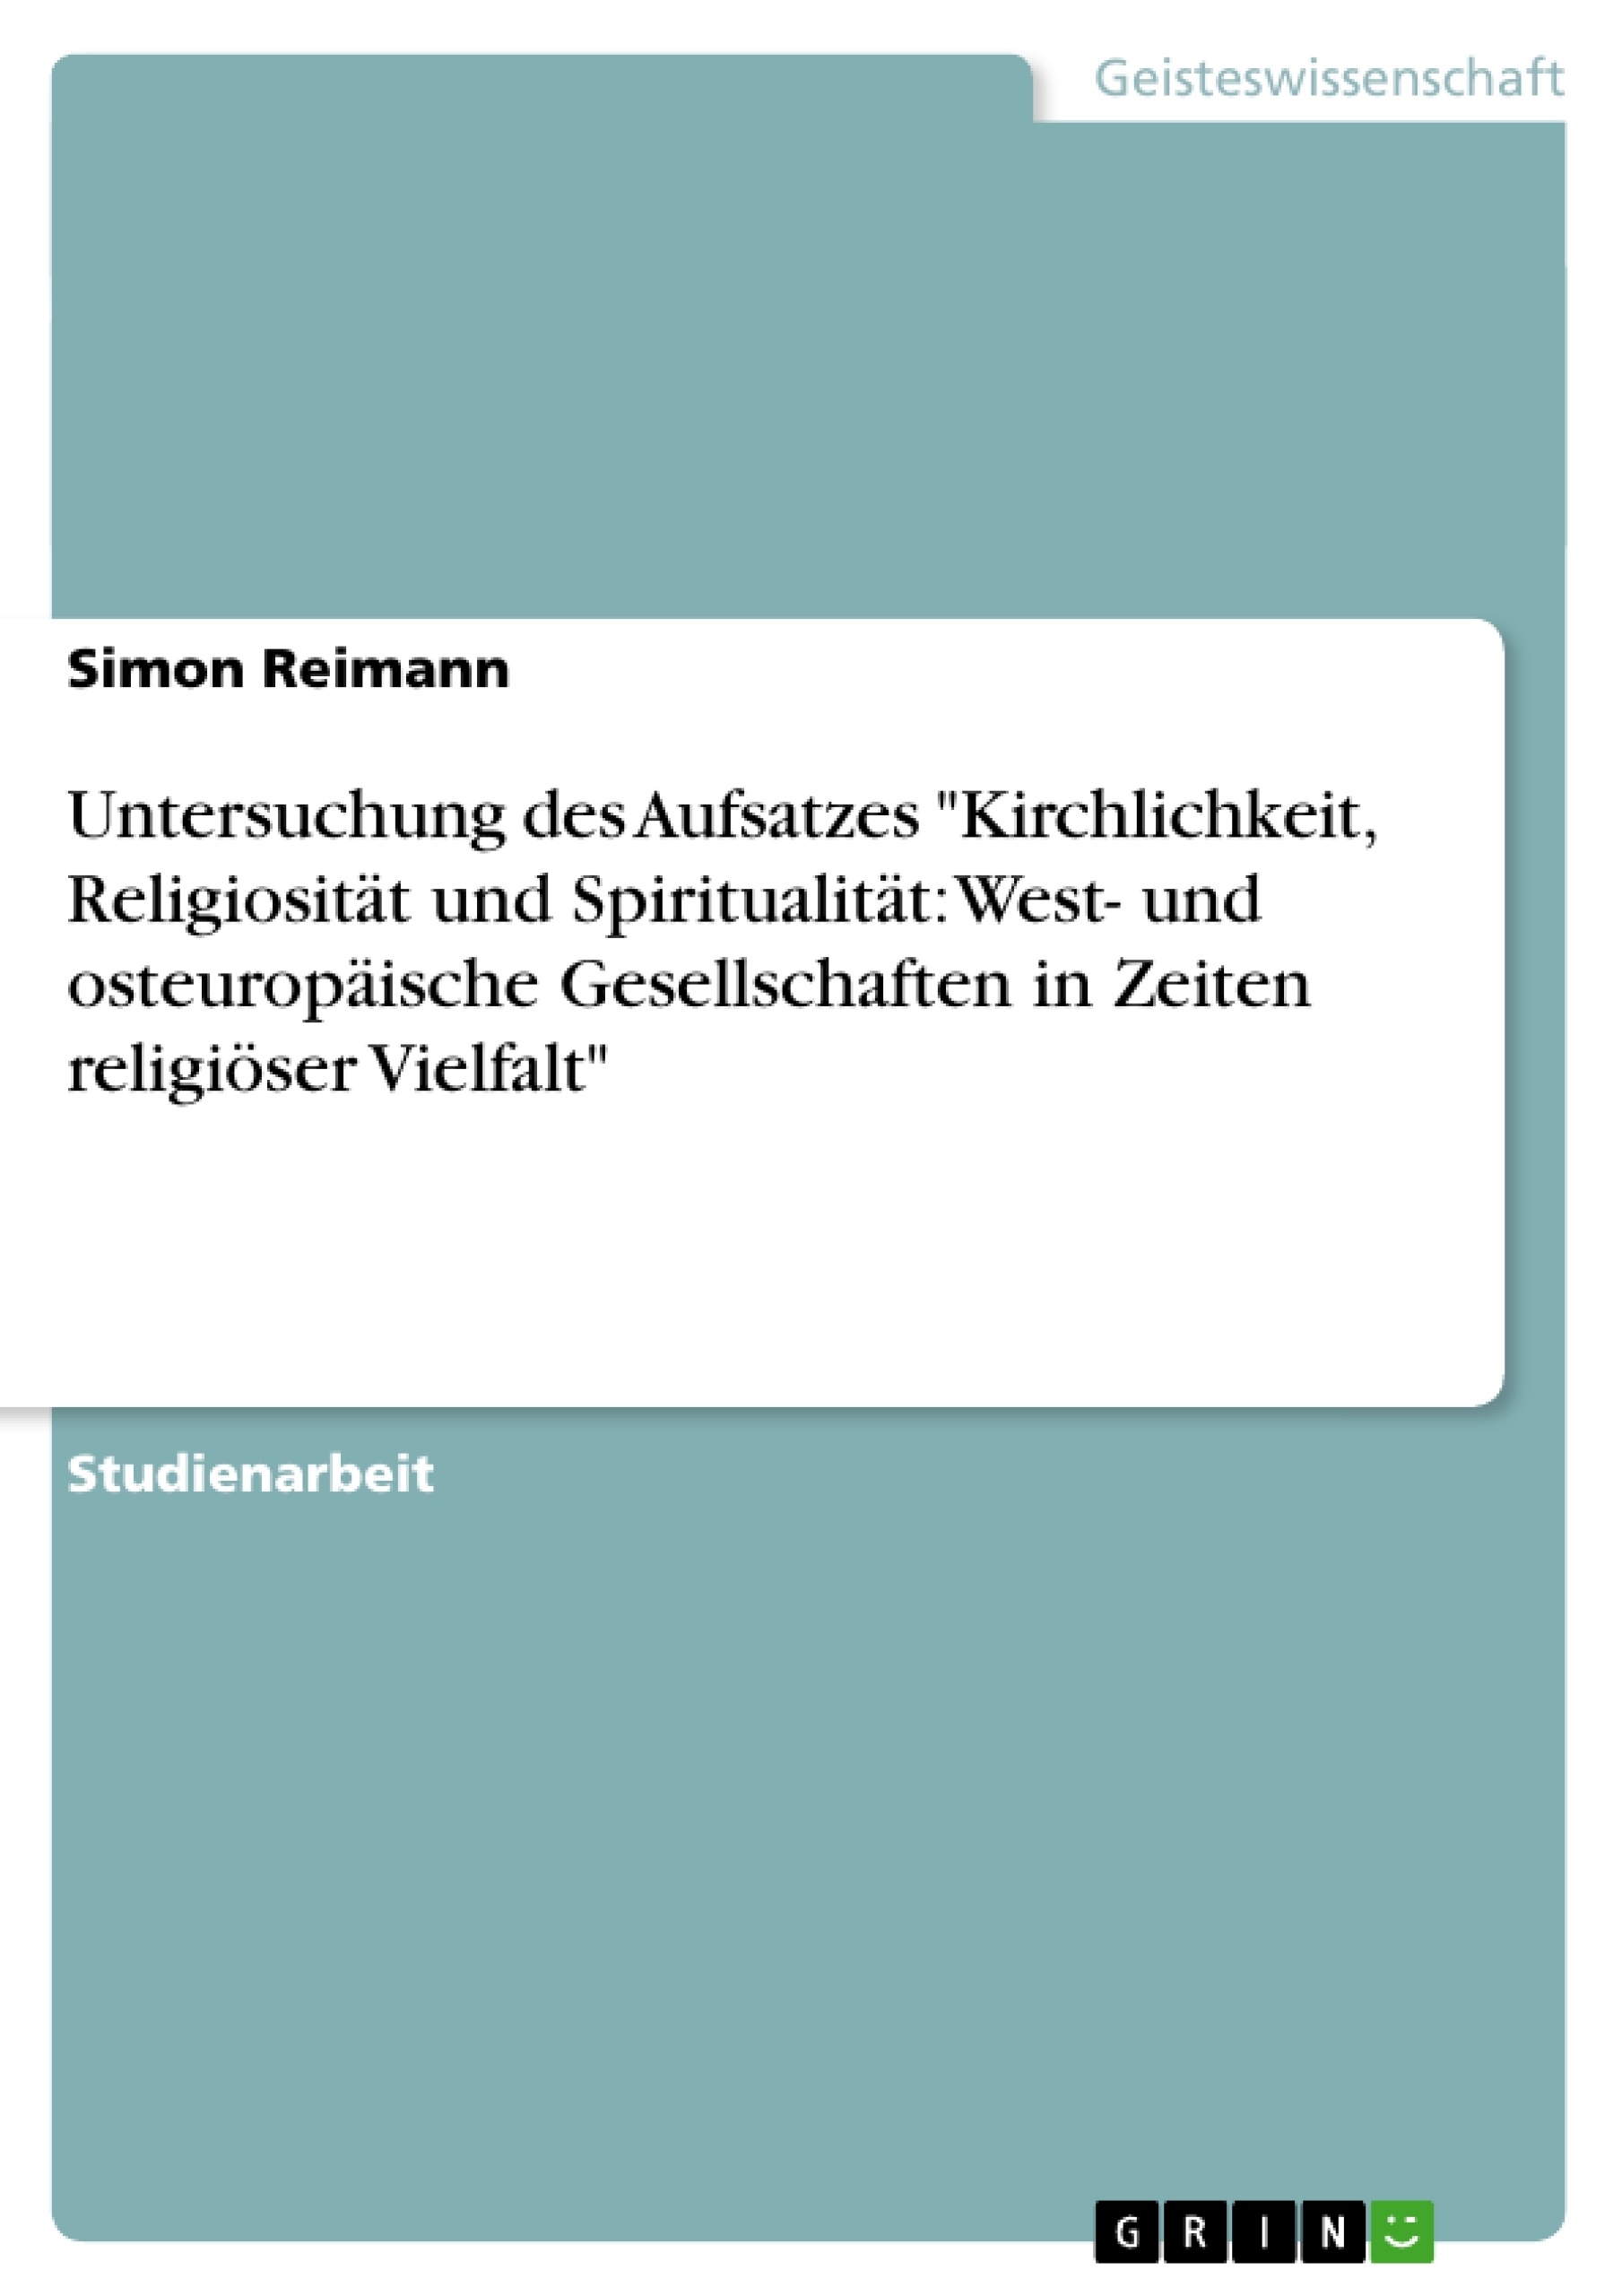 Título: Untersuchung des Aufsatzes "Kirchlichkeit, Religiosität und Spiritualität: West- und osteuropäische Gesellschaften in Zeiten religiöser Vielfalt"